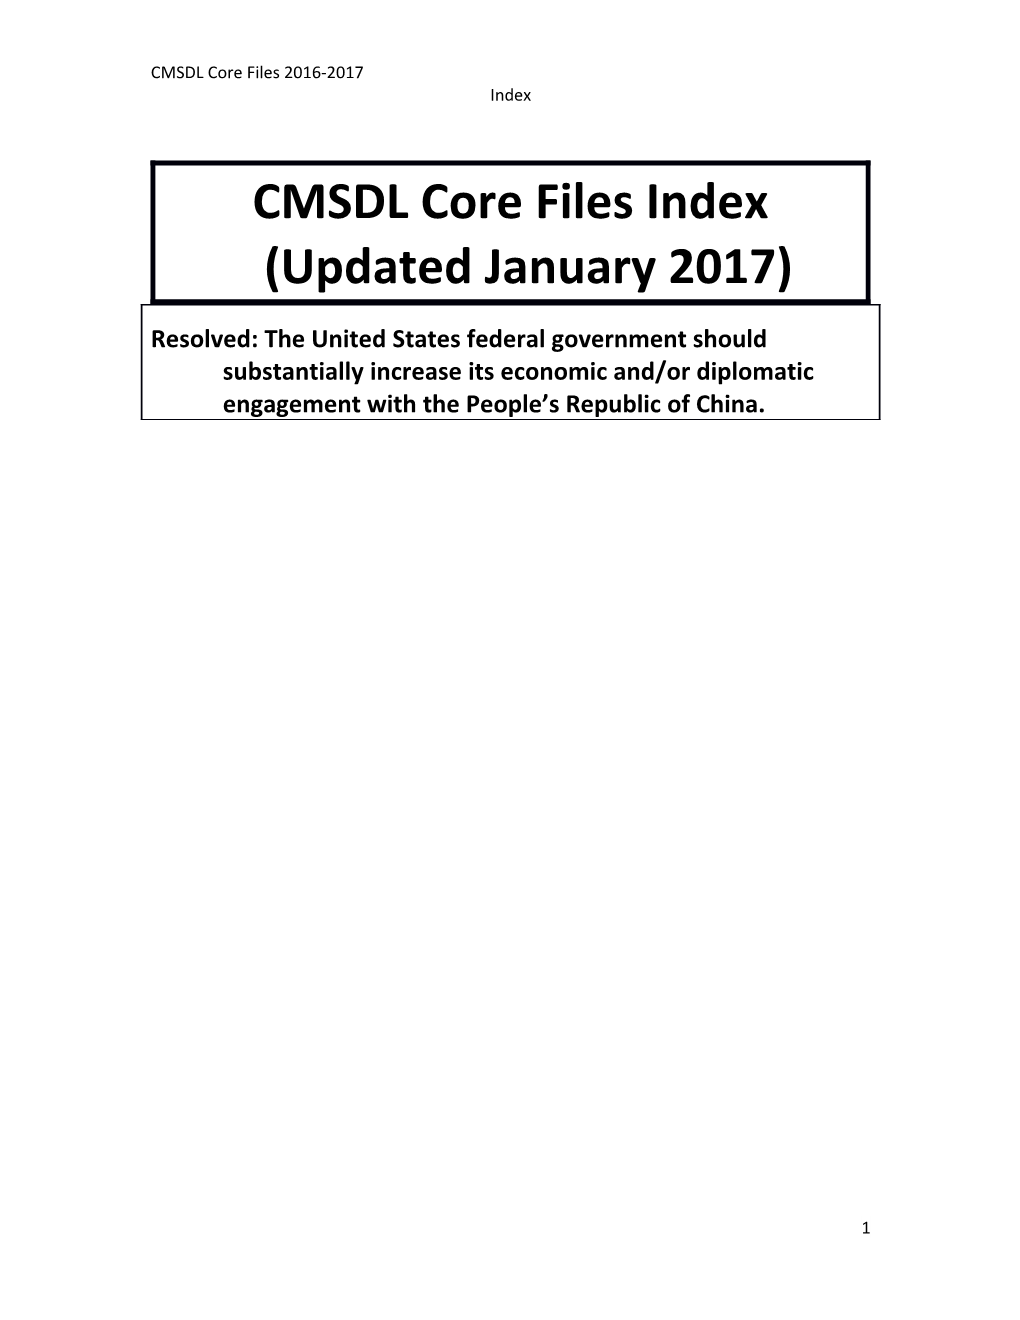 CMSDL Core Files 2016-2017 Index